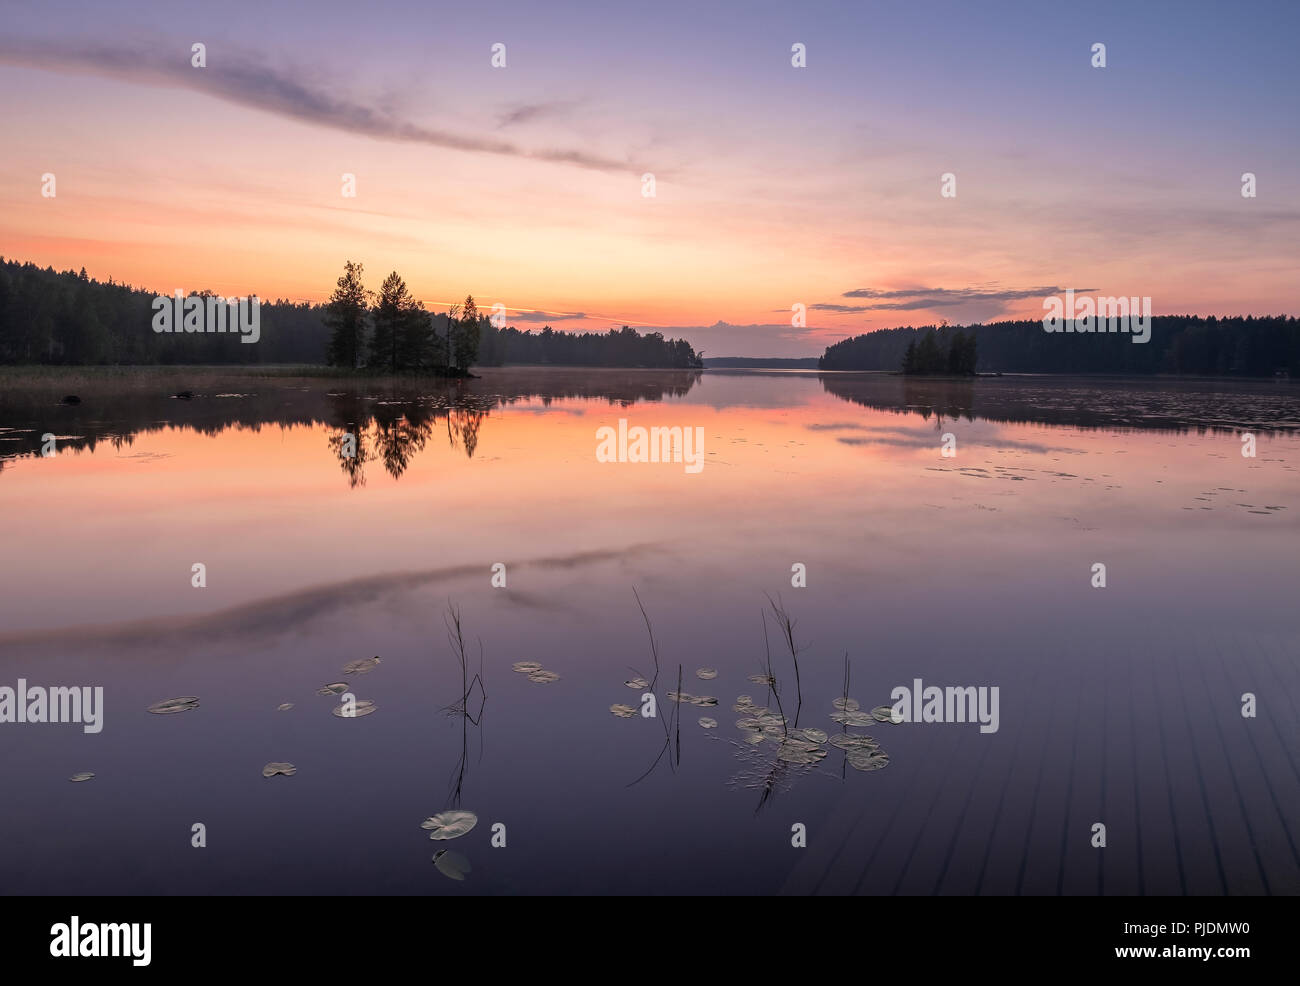 Friedliche Aussicht mit Sonnenuntergang, See und stehendes Wasser im Sommer Nacht in Finnland. Stockfoto